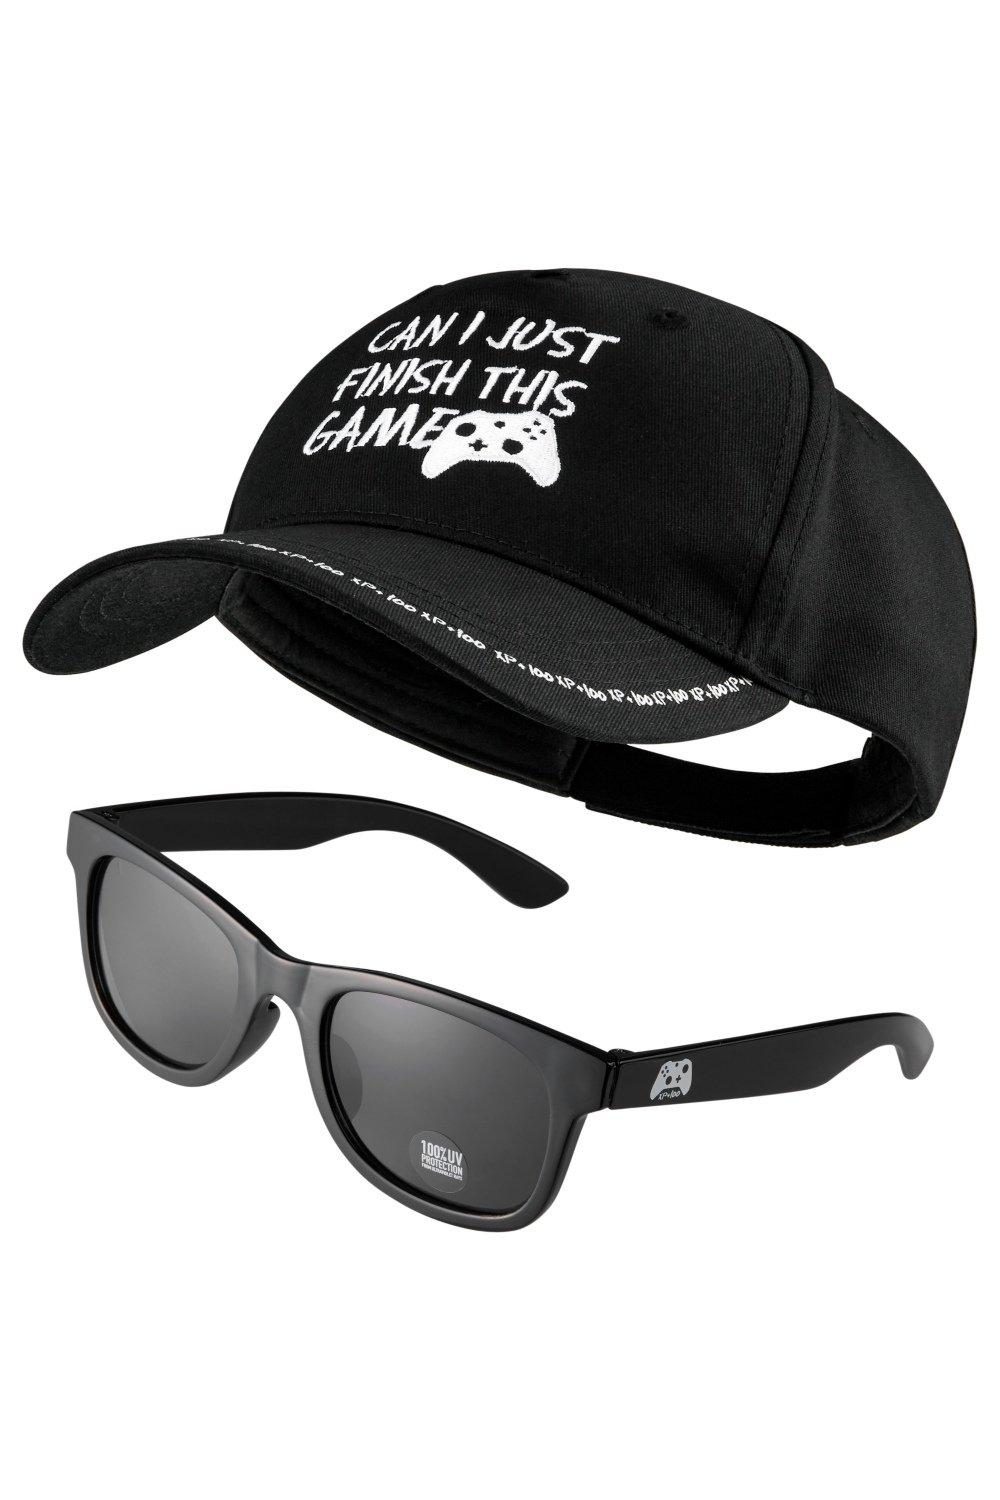 Набор бейсбольной кепки и солнцезащитных очков CityComfort, черный бейсбольная кепка immolation death metal для удушения рок группы повседневная мужская и женская кепка